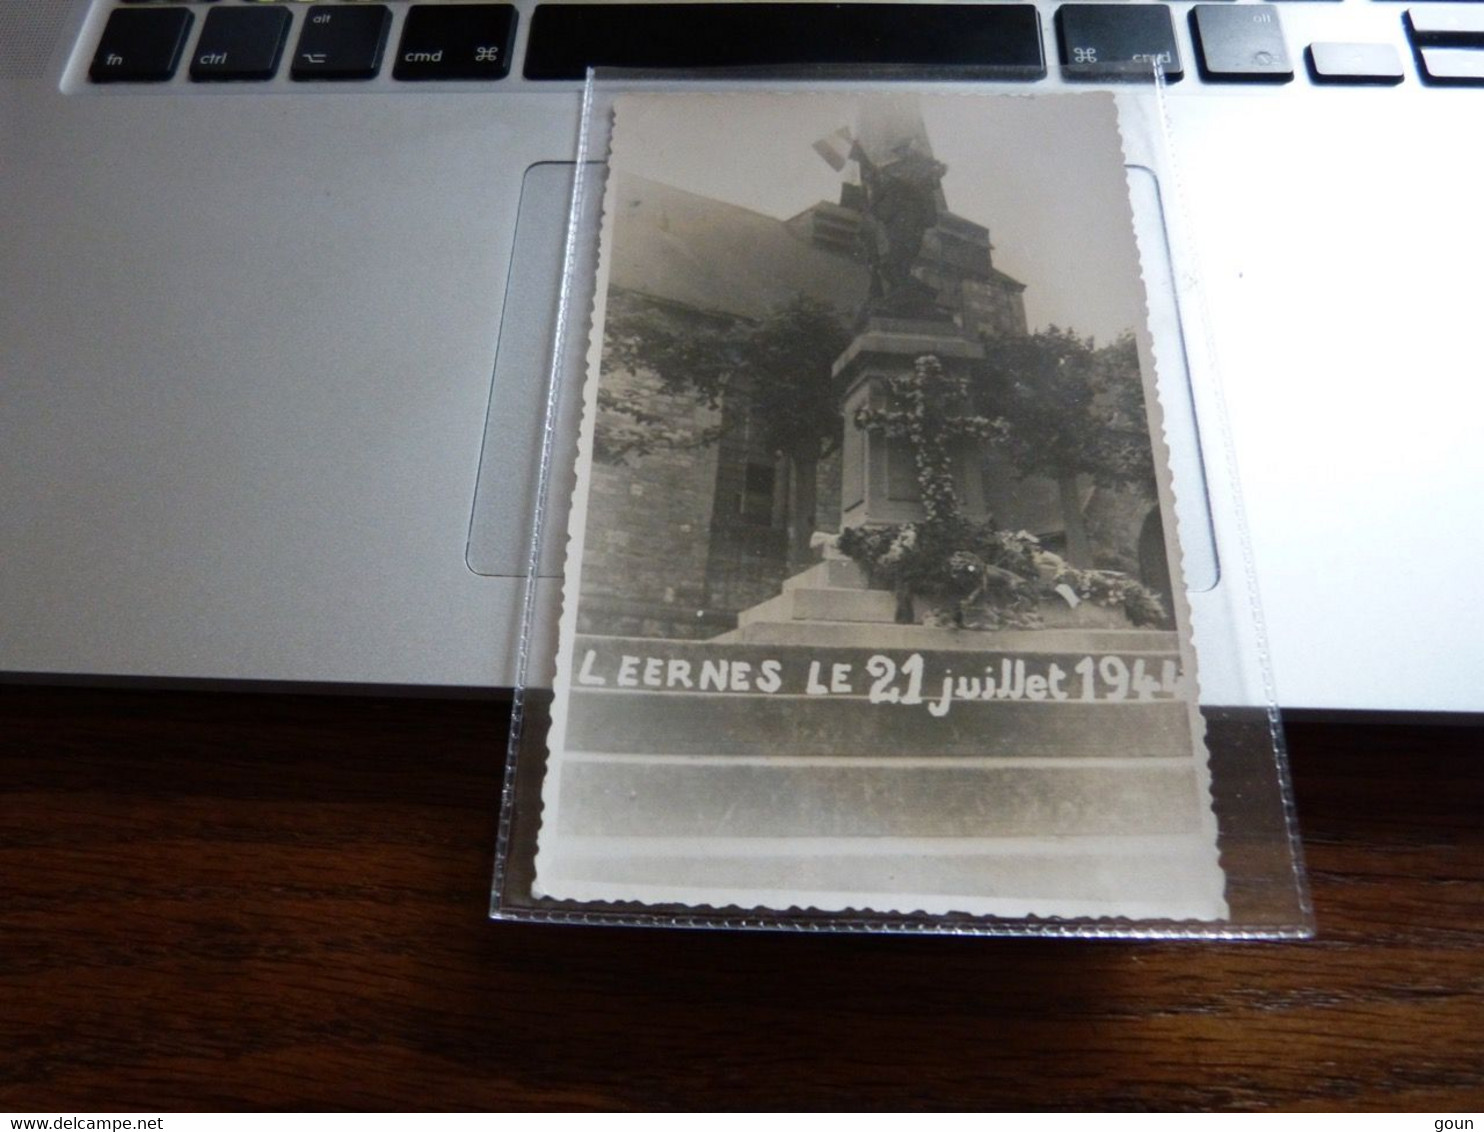 Carte Photo Leernes Monument 21 Juillet 1944 - Fontaine-l'Eveque